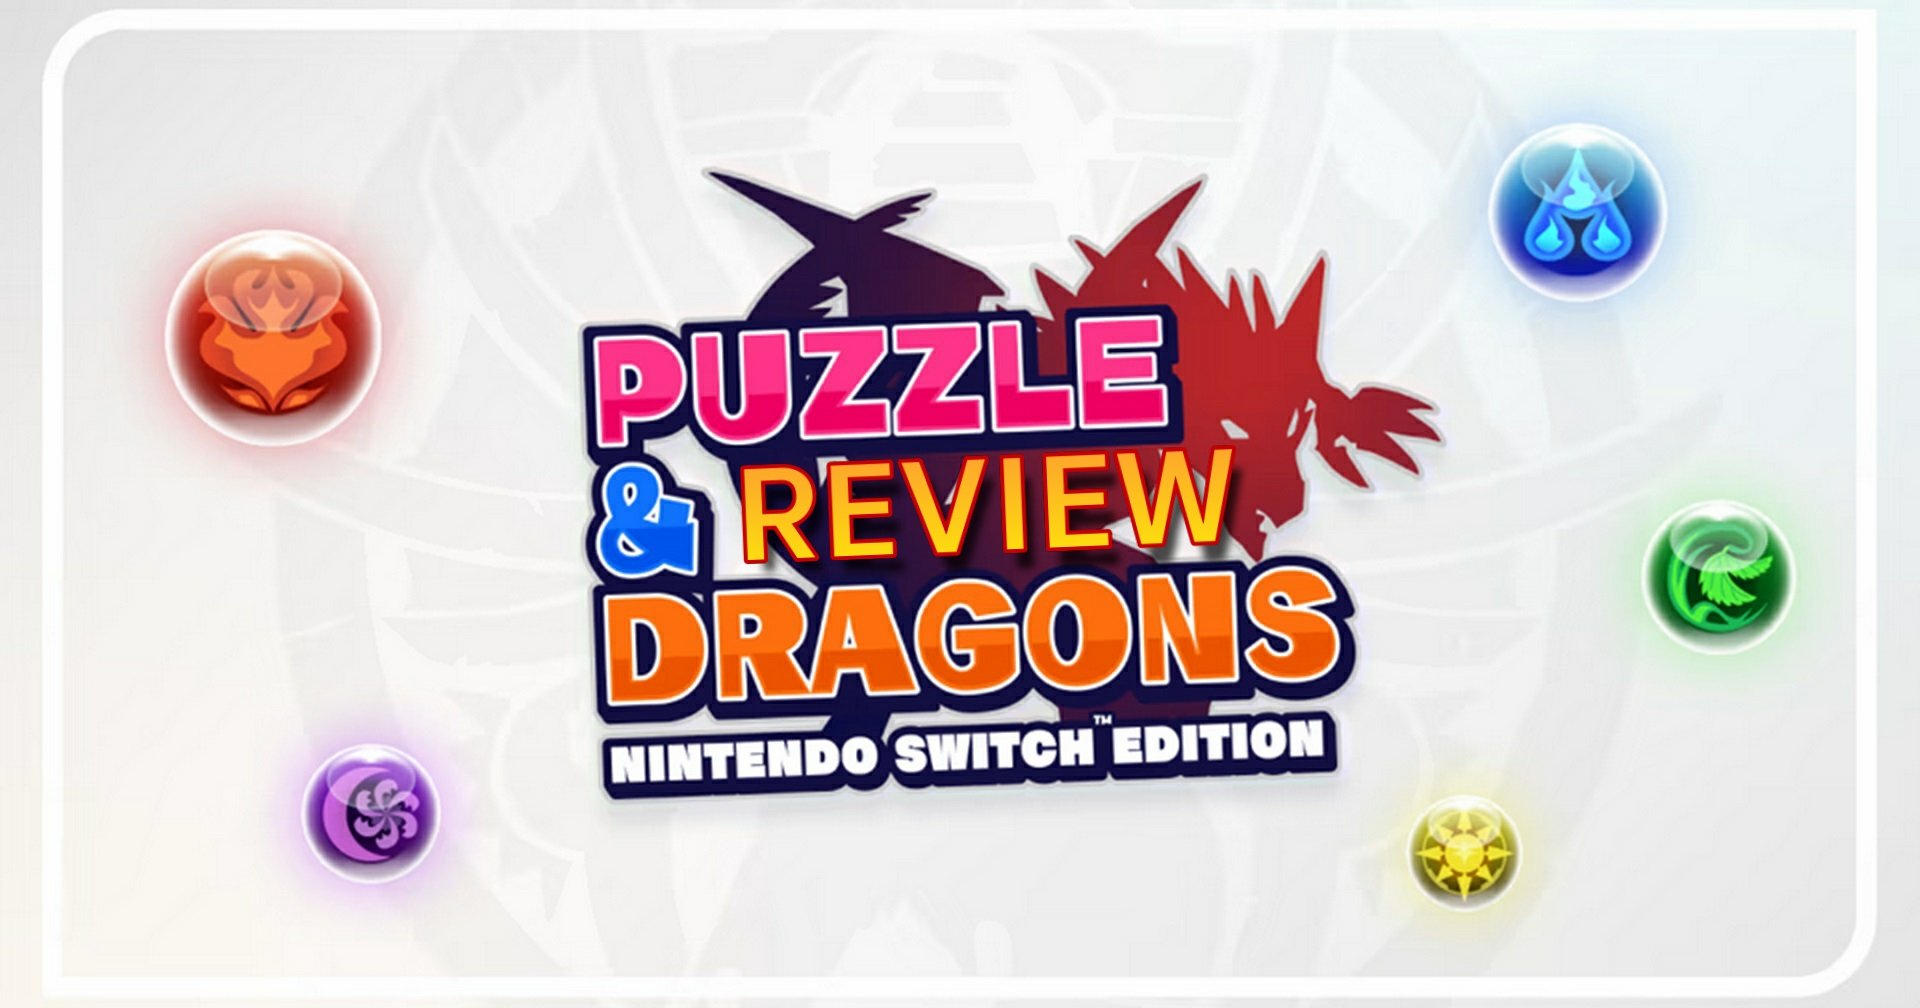 รีวิวเกม PUZZLE & DRAGONS Nintendo Switch Edition เกมแนวเรียงเพชรตะลุยดันเจี้ยน